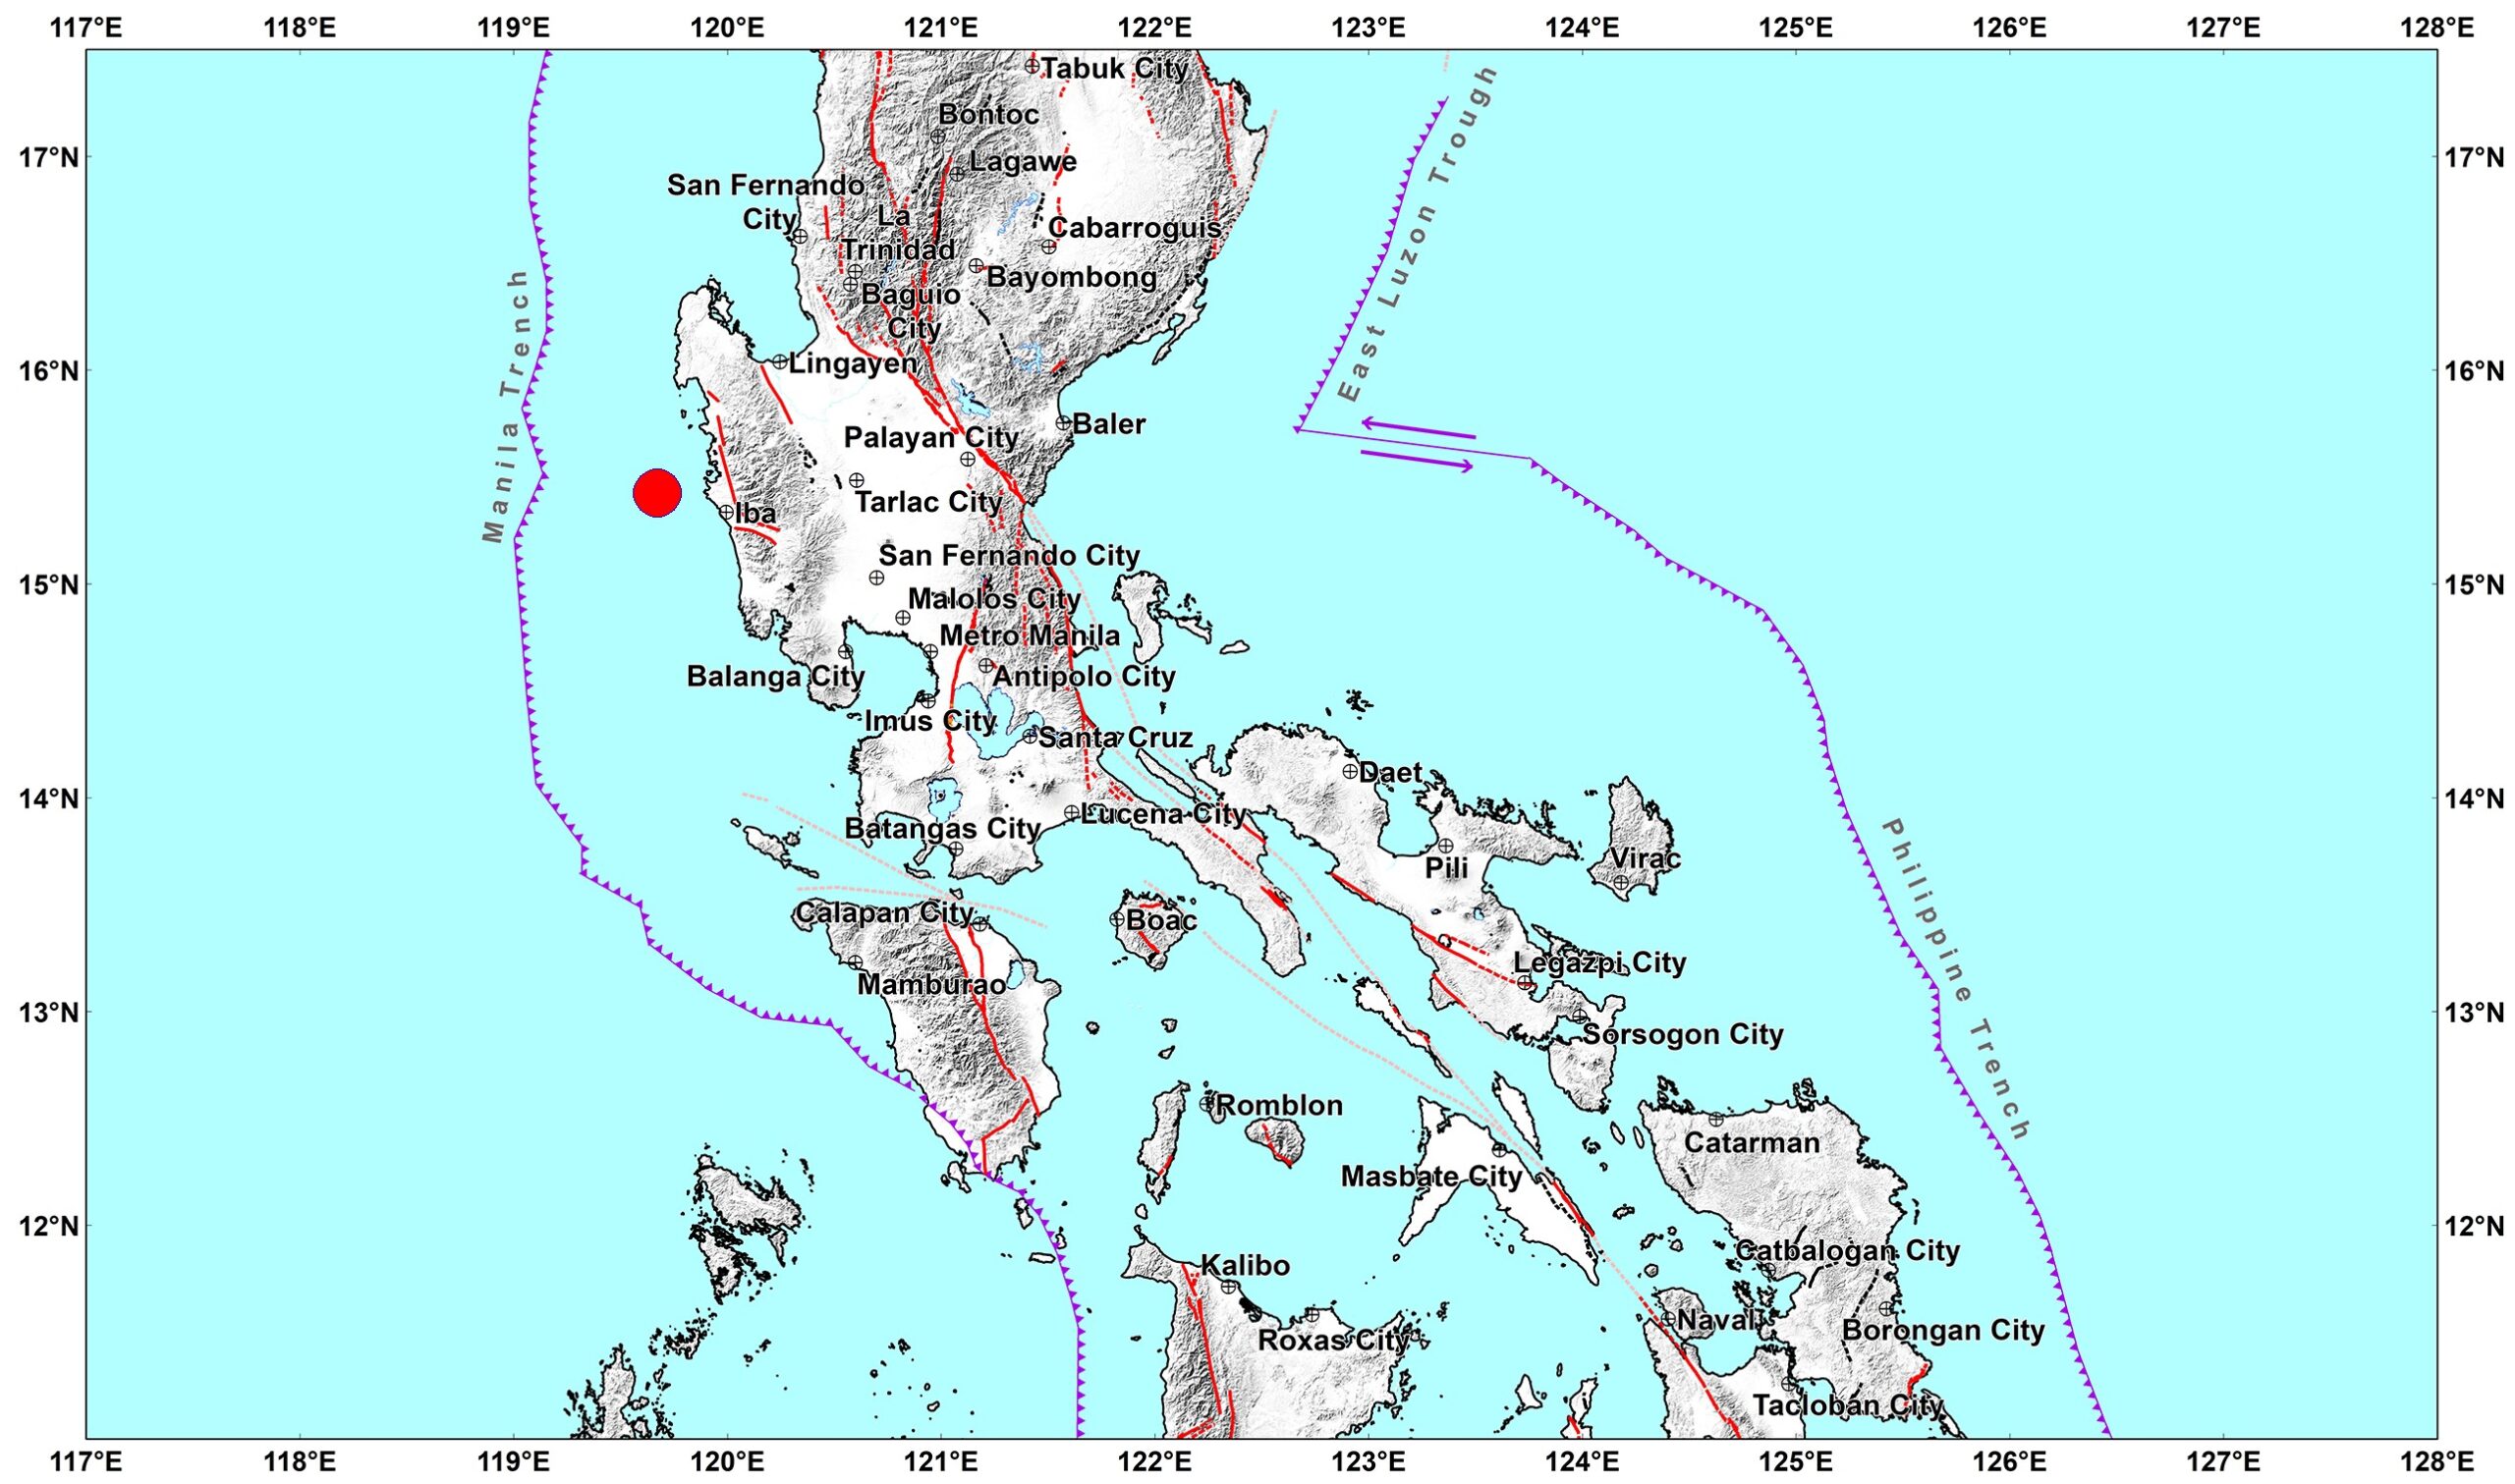 phivolcs earthquake intensity scale